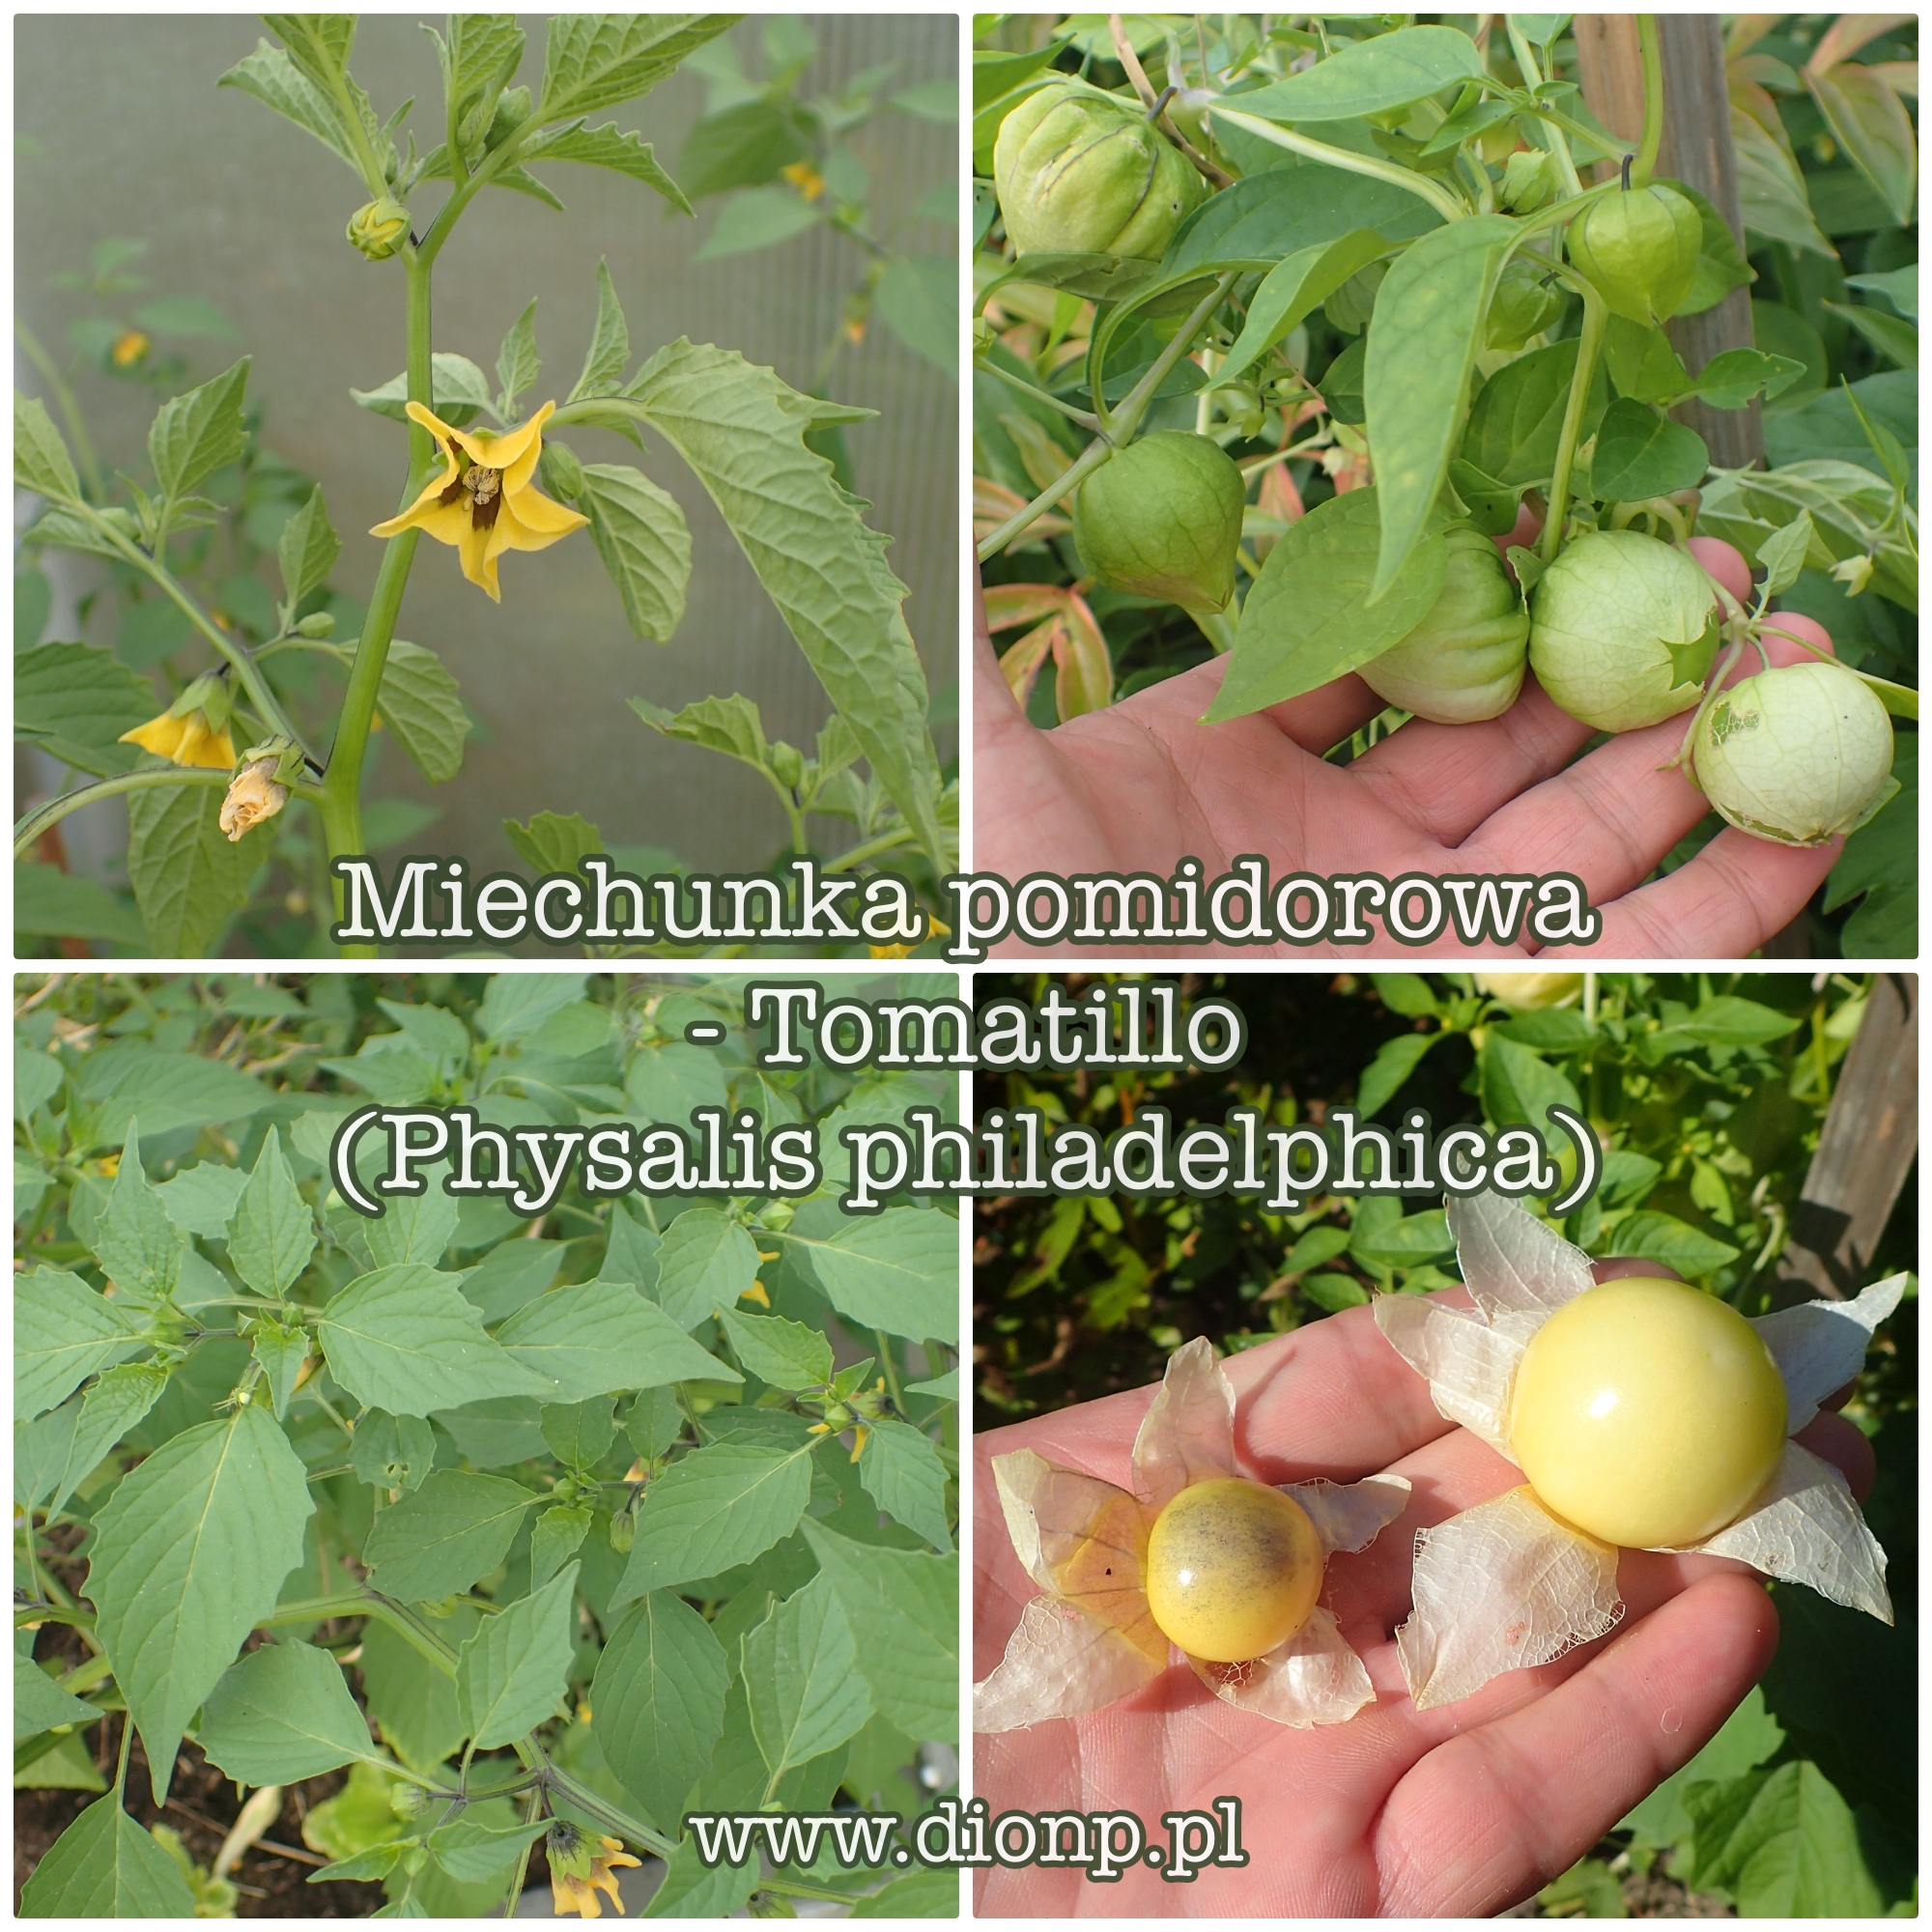 Miechunka pomidorowa czyli tomatillo – uprawa w ogrodzie